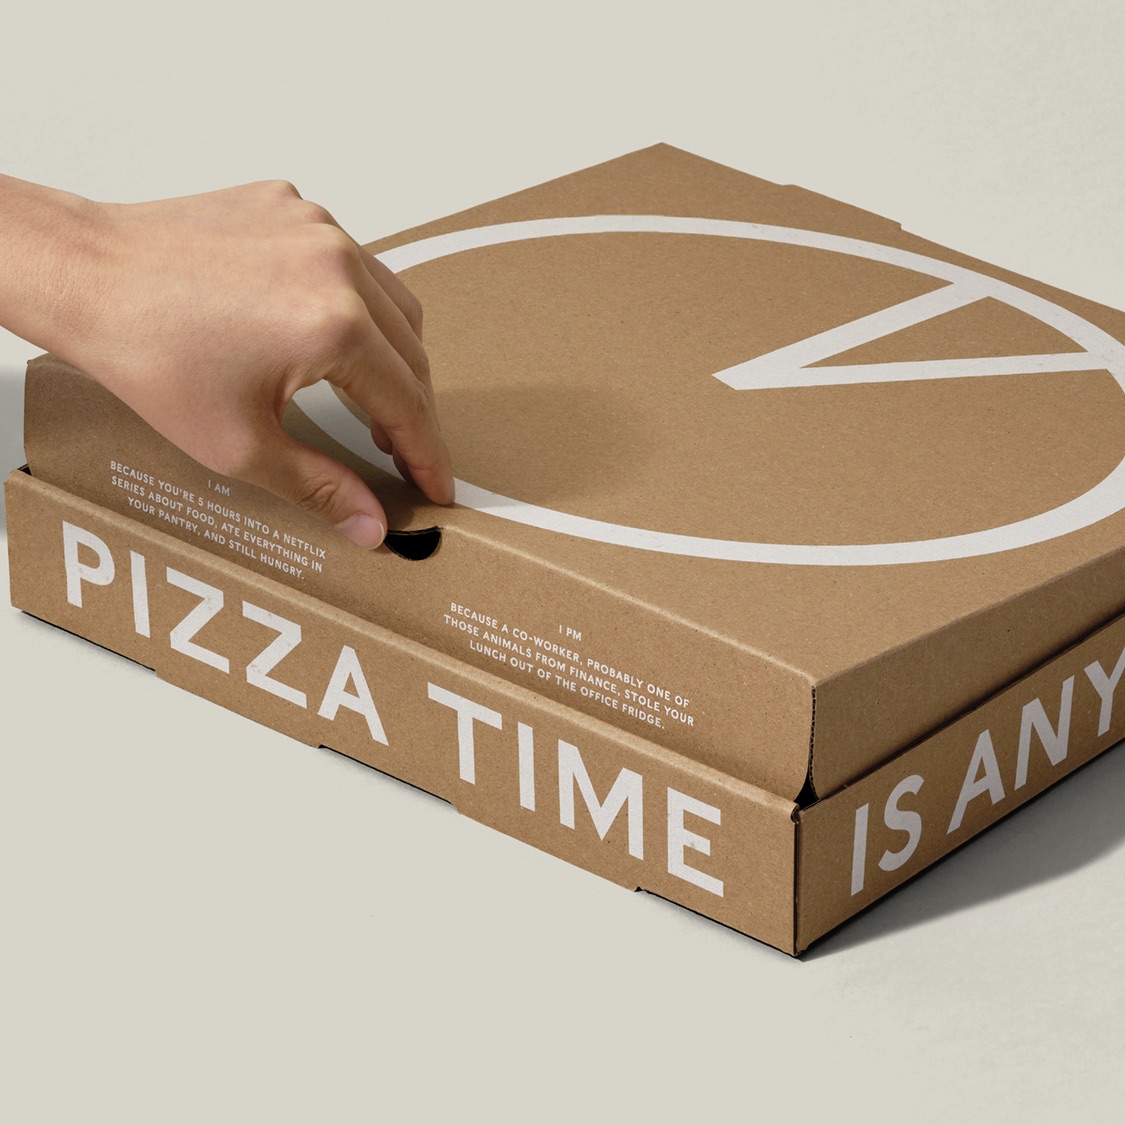 10 inch Pizza Box,Reusable Corrugated Pizza Box,Pizza Box,Pizza Box  wholesale,custom Pizza Box,Disposable Pizza Box,Pizza Box suppliers